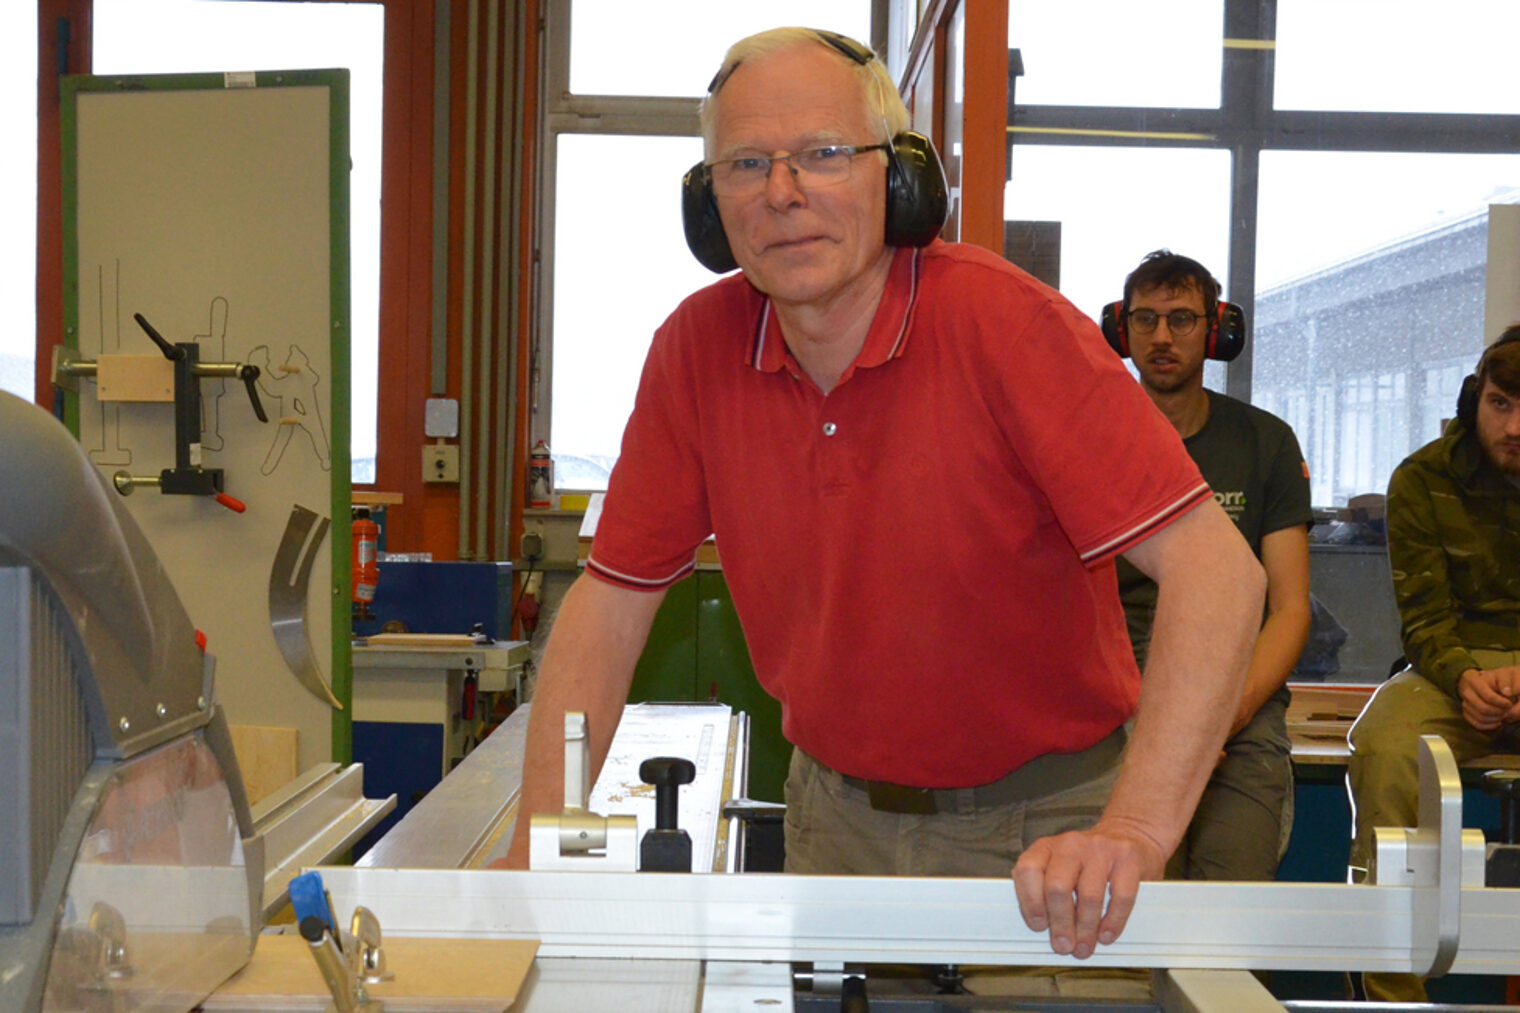 Lernt schnell und mit viel Freude: Walter Boosfeld. Aufgabe in der ÜLU: Ein Schlüsselkasten aus Holz soll gefertigt werden. 